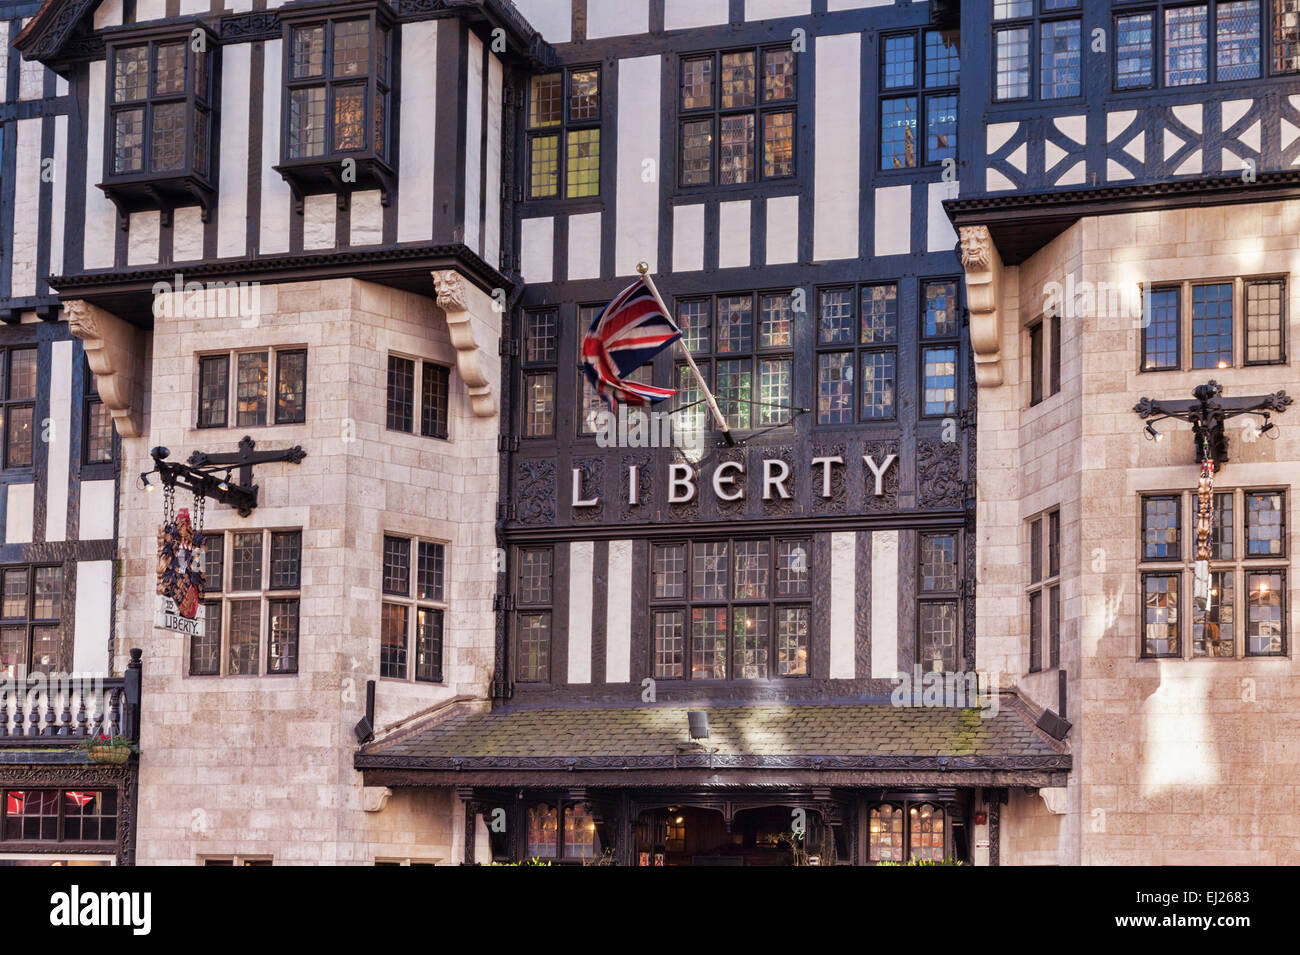 La célèbre boutique avant de la liberté, Regent Street, Londres, Angleterre. Banque D'Images